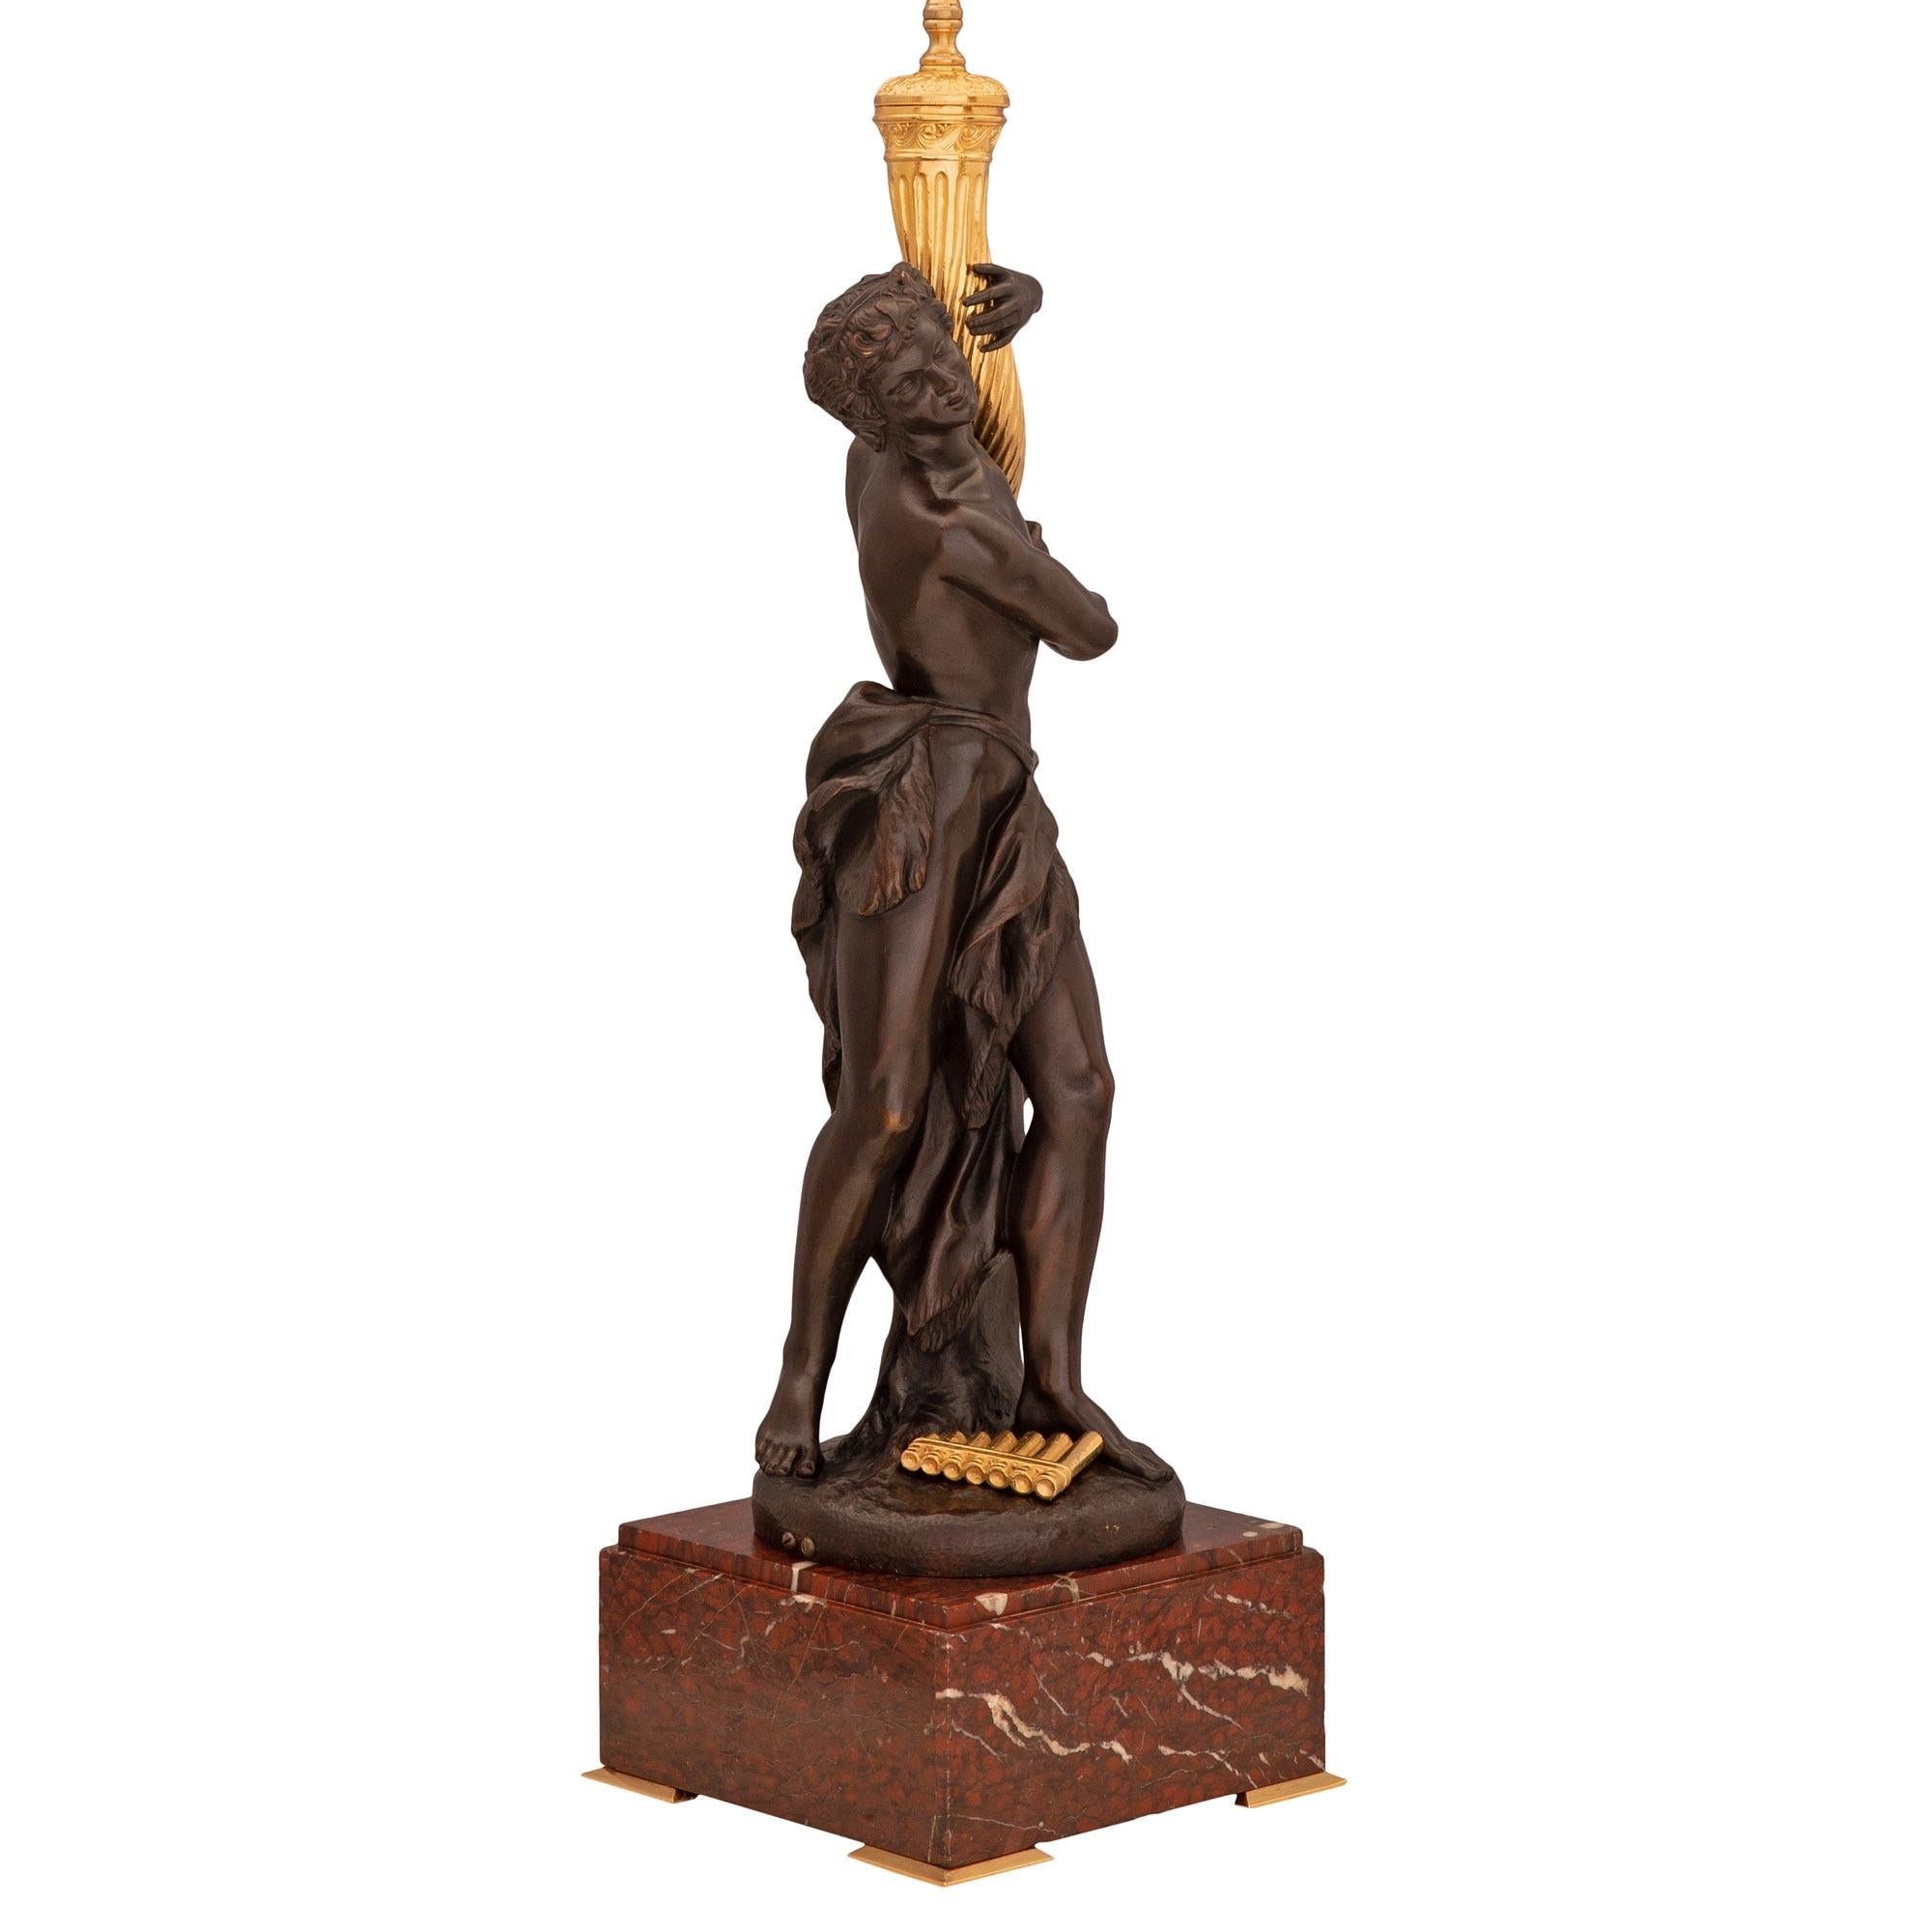 Superbe lampe néo-classique française du 19ème siècle en bronze doré, bronze patiné et marbre Rouge Griotte, signée Clodion. La lampe est surélevée par une impressionnante base carrée en marbre Rouge Griotte avec une fine bordure mouchetée et